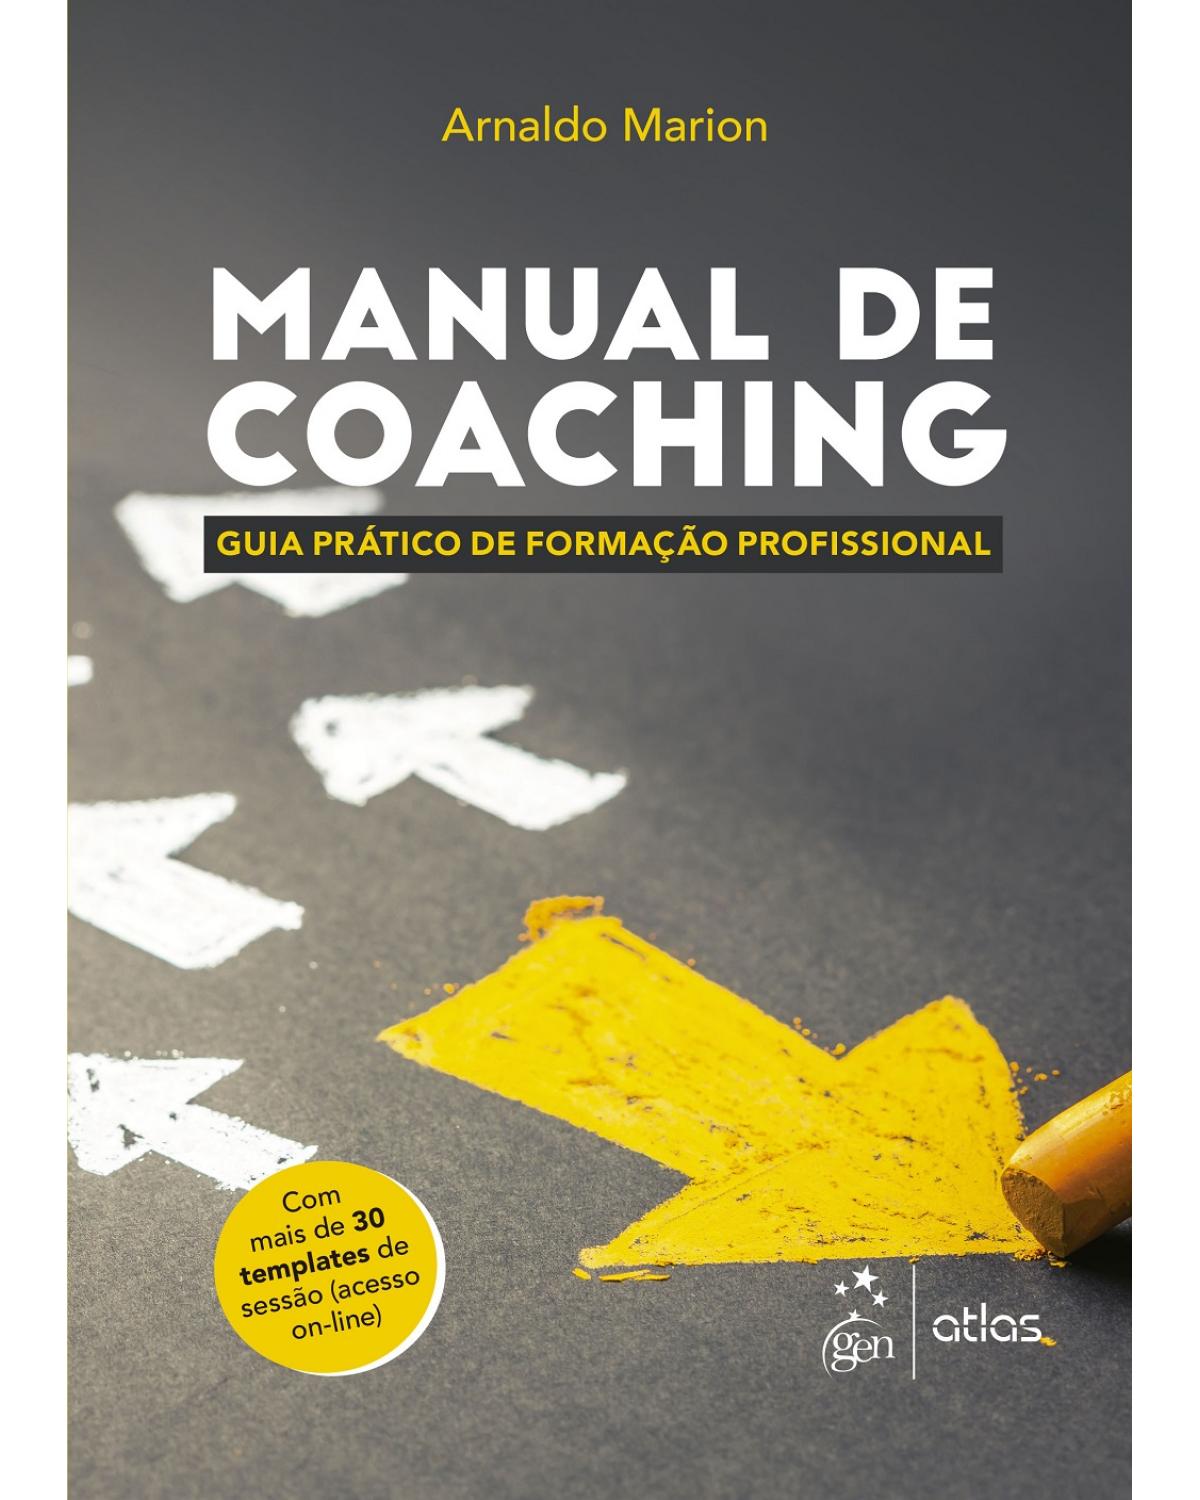 Manual de coaching - Guia prático de formação profissional - 1ª Edição | 2017